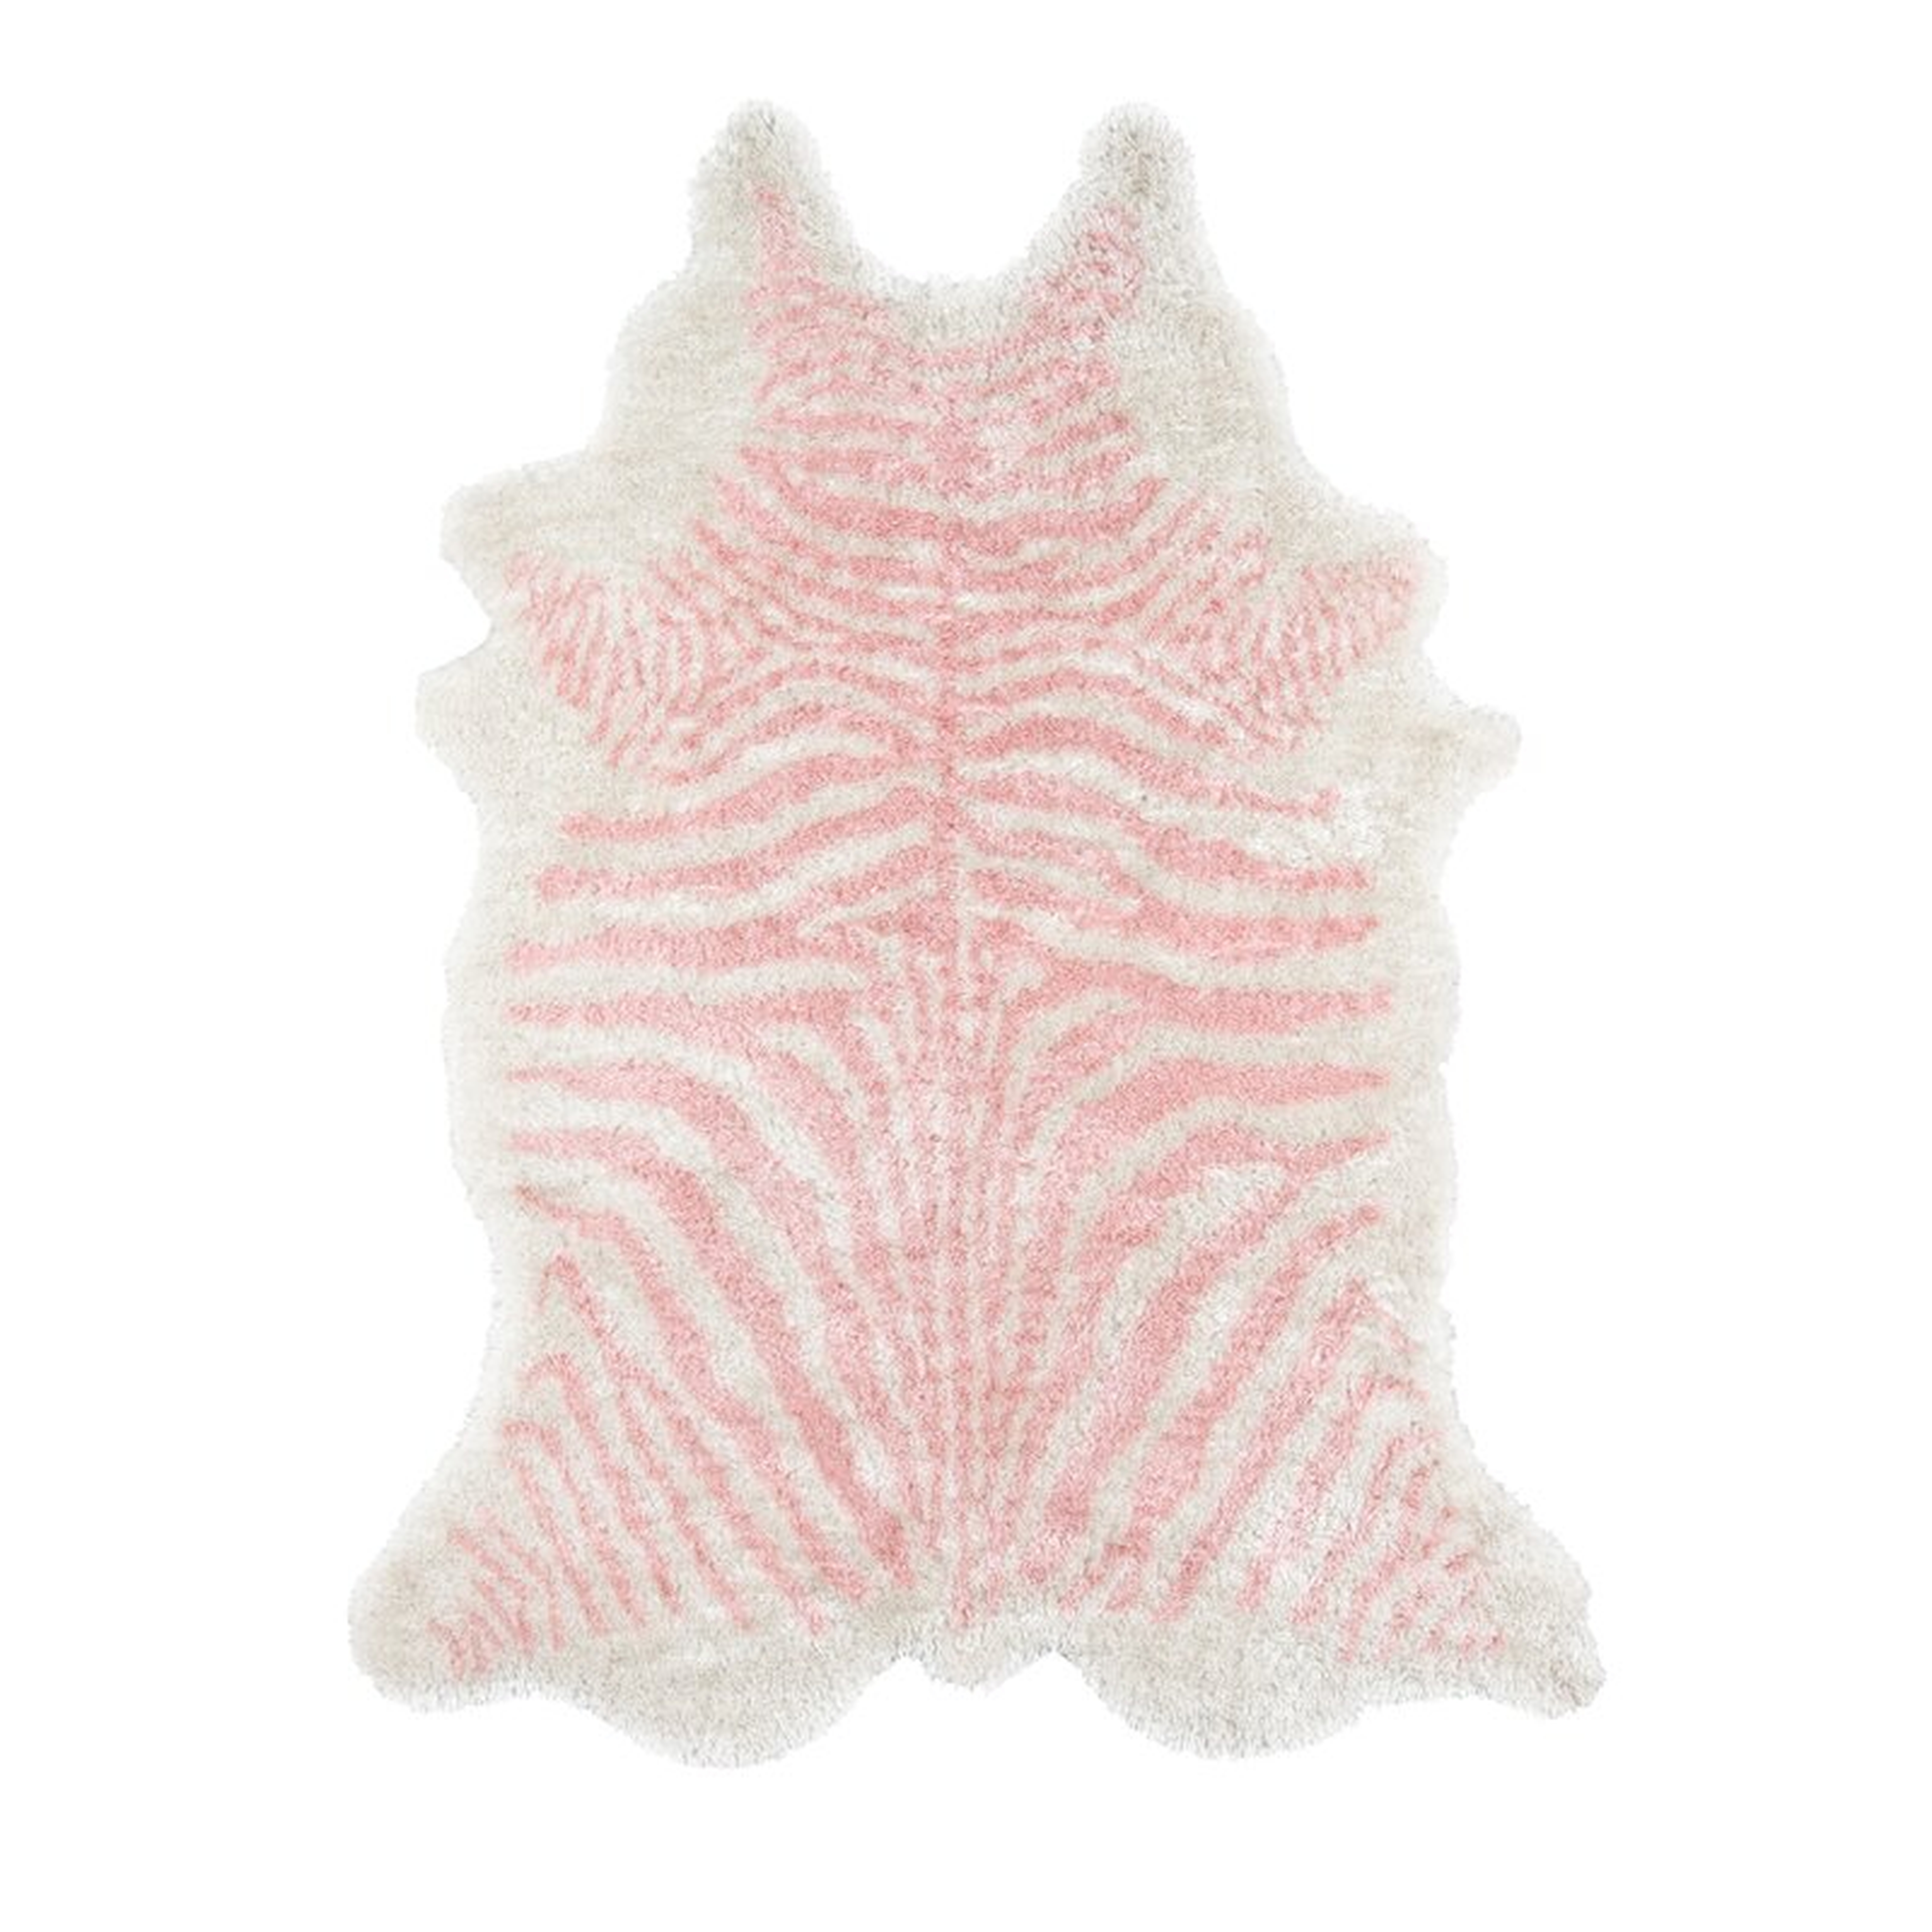 Khalhari Animal Print Handmade Tufted Pink Area Rug - Wayfair